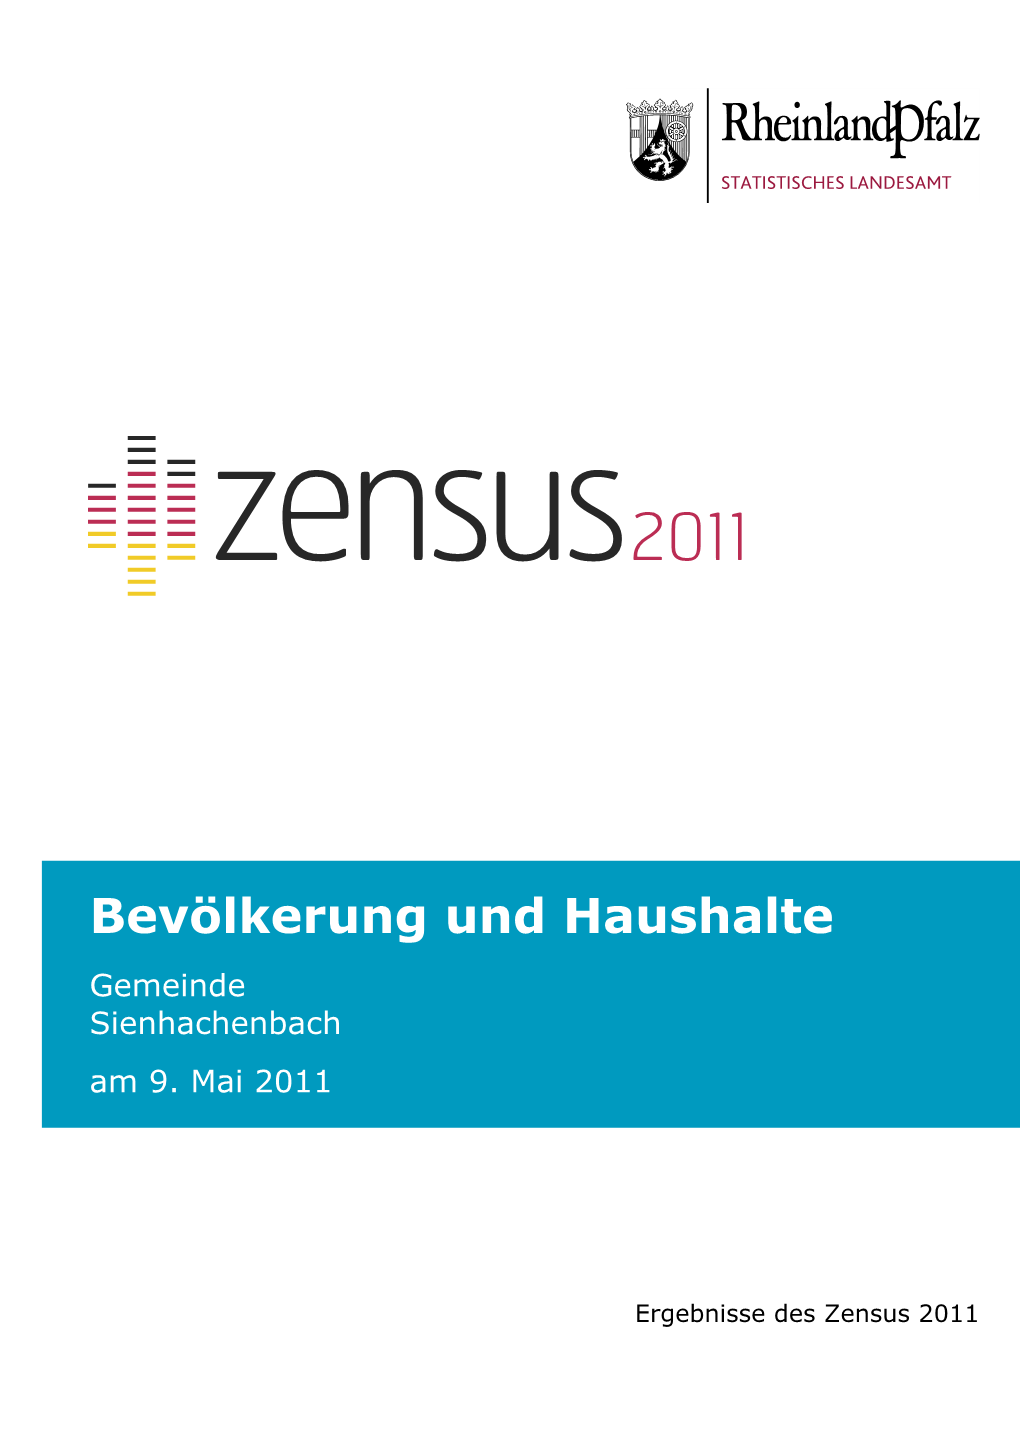 Bevölkerung Und Haushalte Am 9. Mai 2011, Sienhachenbach